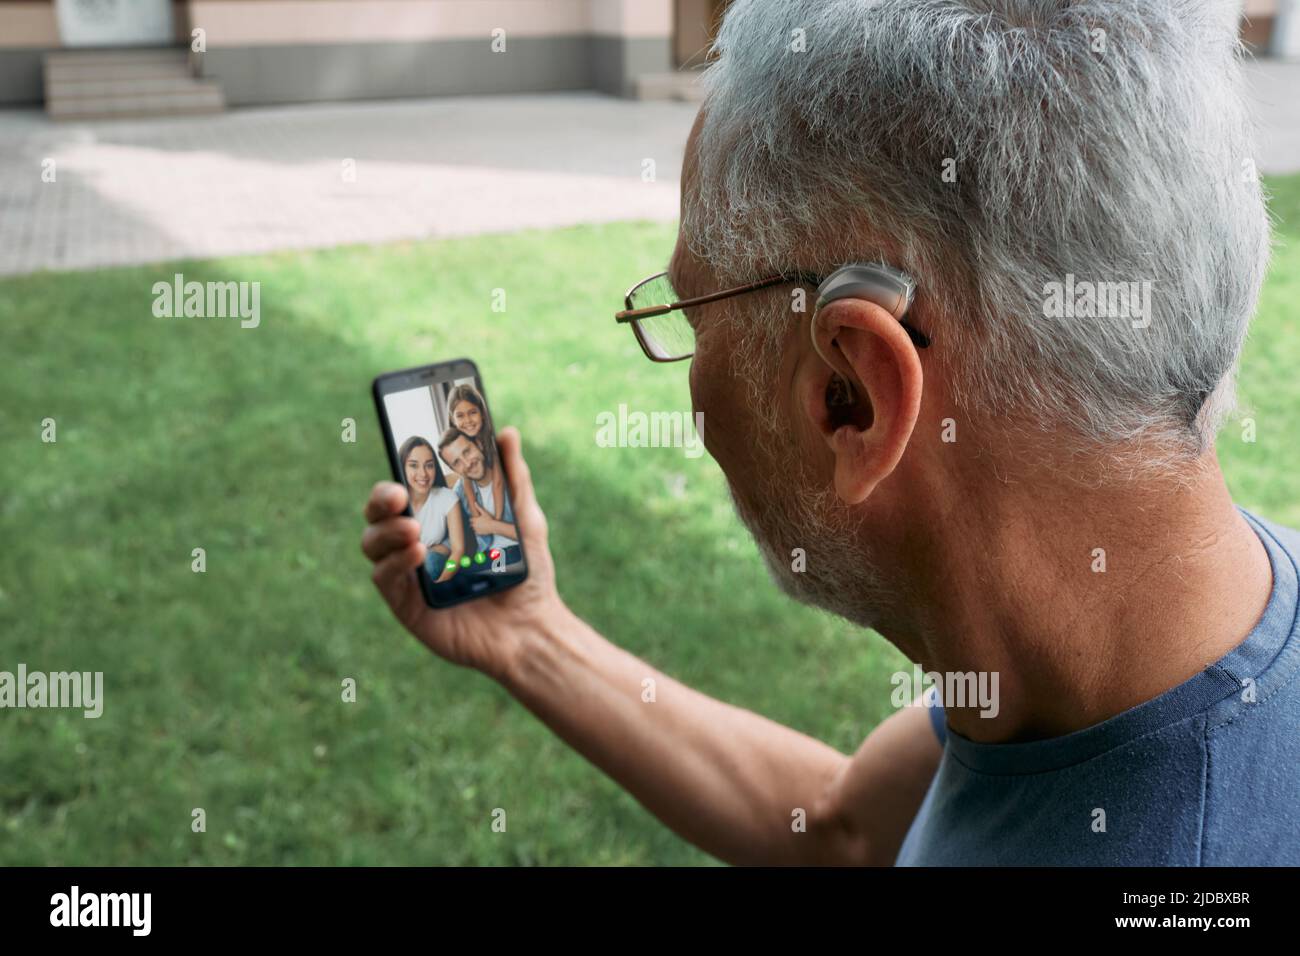 Un homme âgé doté d'une prothèse auditive à l'oreille communique avec sa famille via une communication vidéo via un smartphone. Une vie humaine complète avec des prothèses auditives Banque D'Images